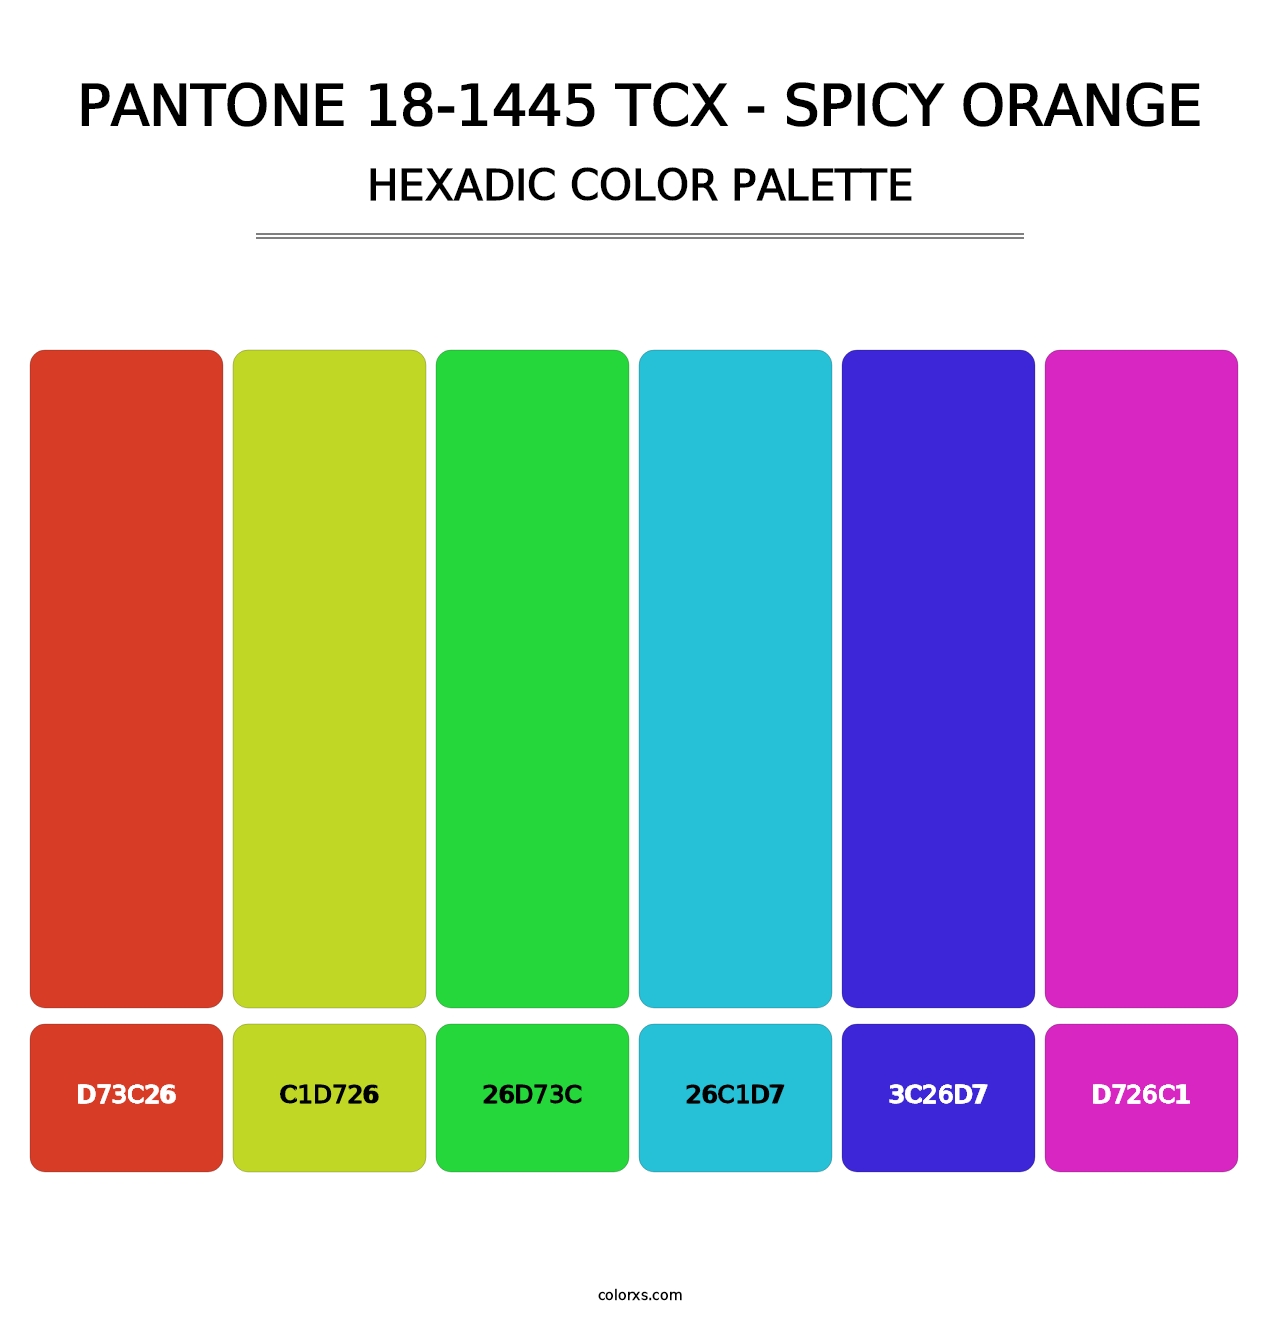 PANTONE 18-1445 TCX - Spicy Orange - Hexadic Color Palette